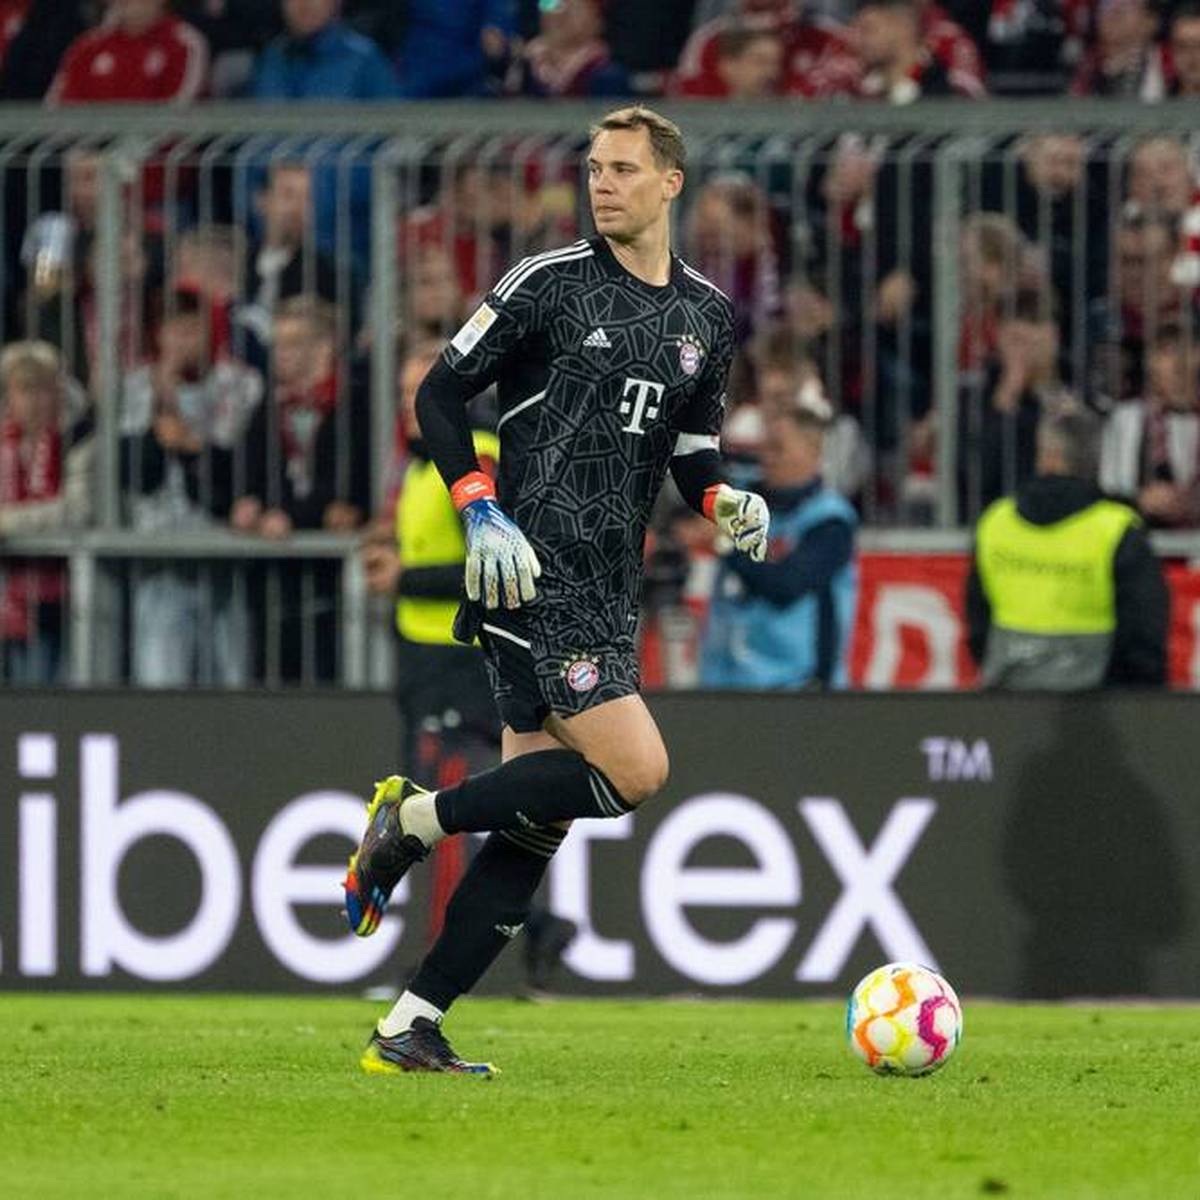 Manuel Neuer lässt in den sozialen Medien über seine zukünftige Torwartausrüstung abstimmen. Die Präferenz der Fans wird deutlich.